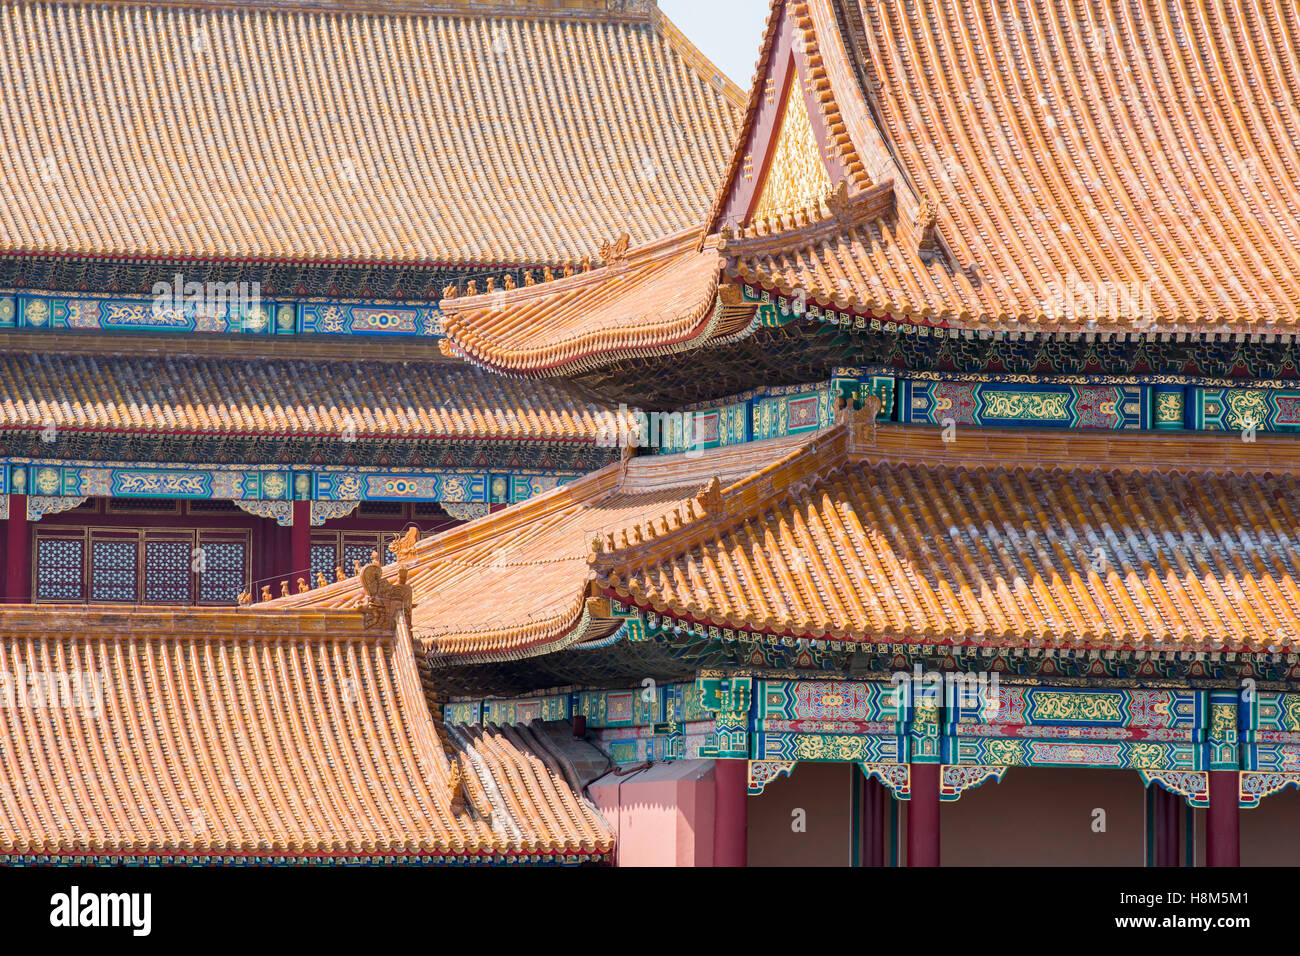 Beijing, China - El detalle del techo ornamentados y la arquitectura del museo del palacio ubicado en la Ciudad Prohibida. Foto de stock